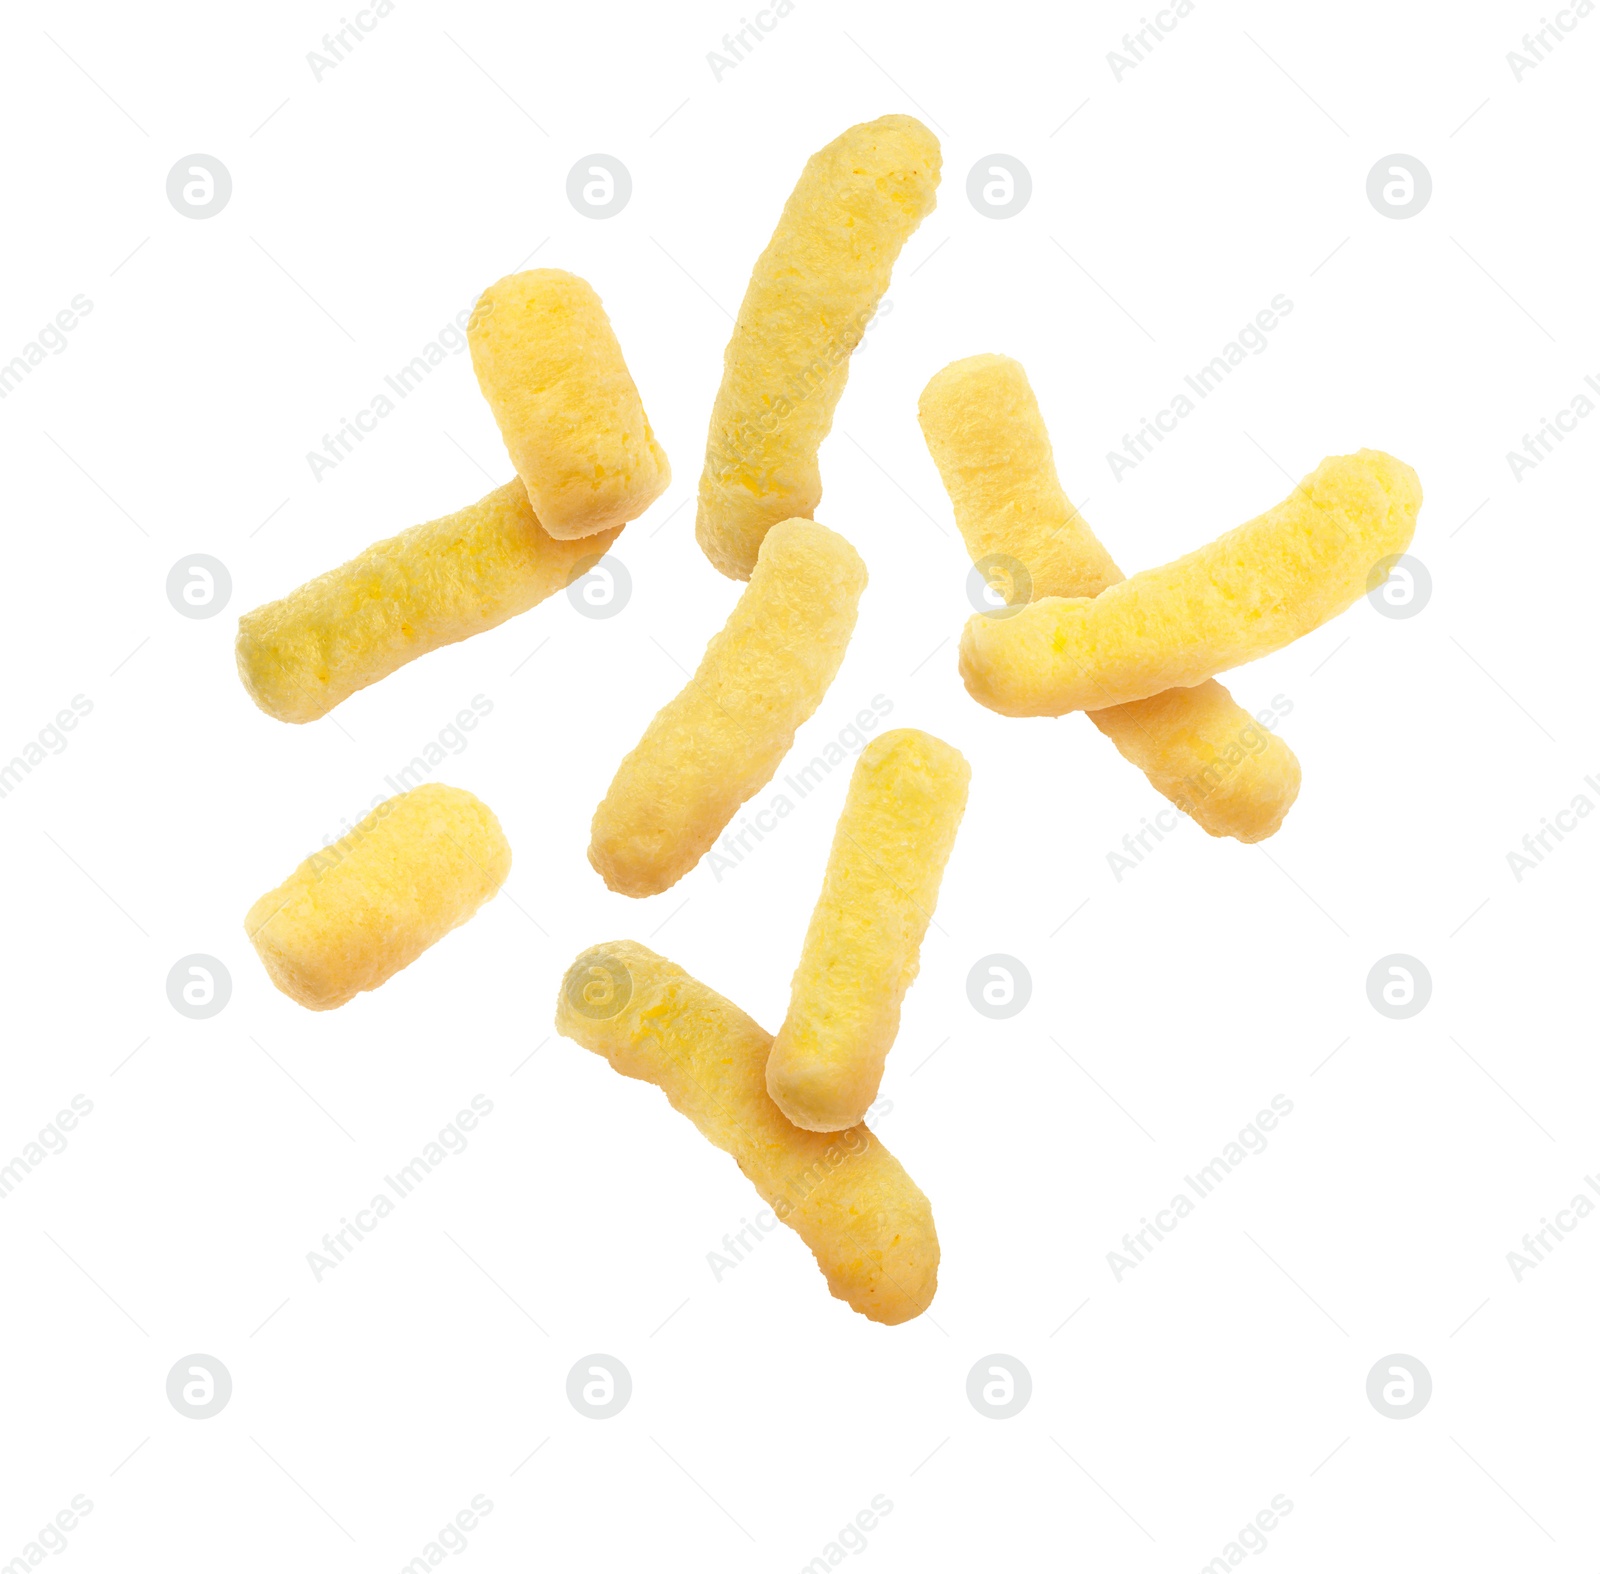 Image of Many tasty corn sticks falling on white background